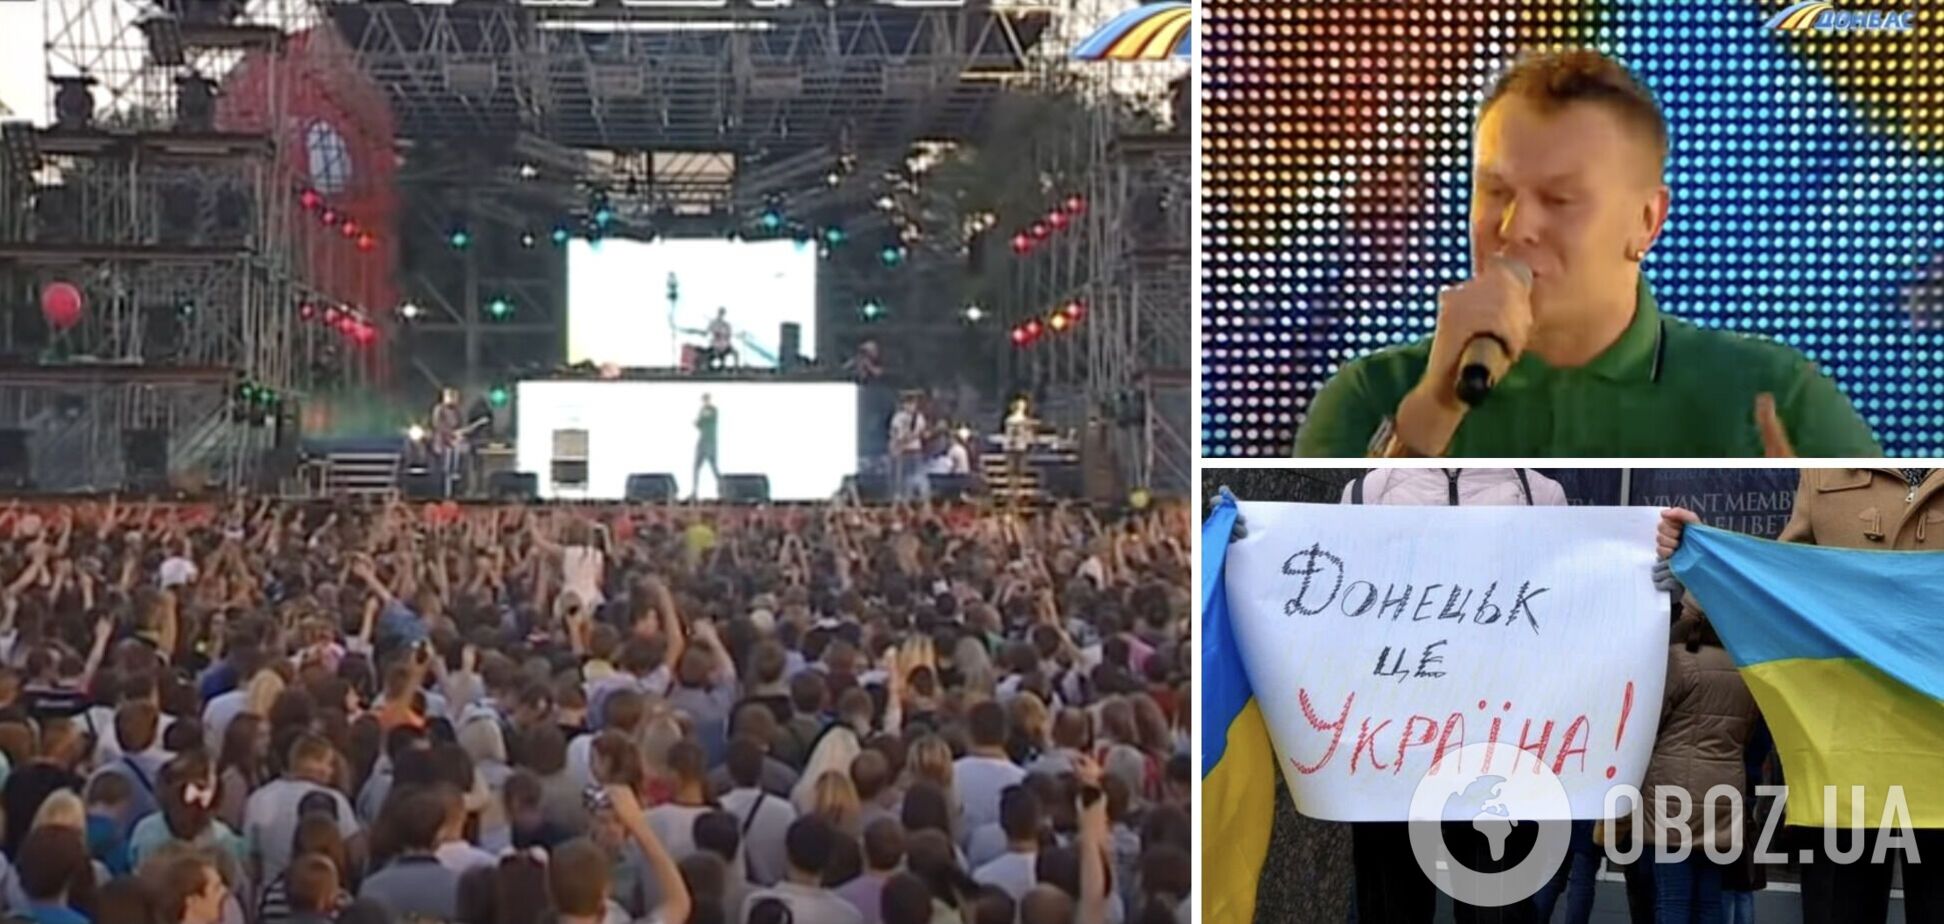 А через рік почалася війна. Відео з концерту 'Тартака' в Донецьку, де люди відриваються під українські пісні, зворушило мережу
